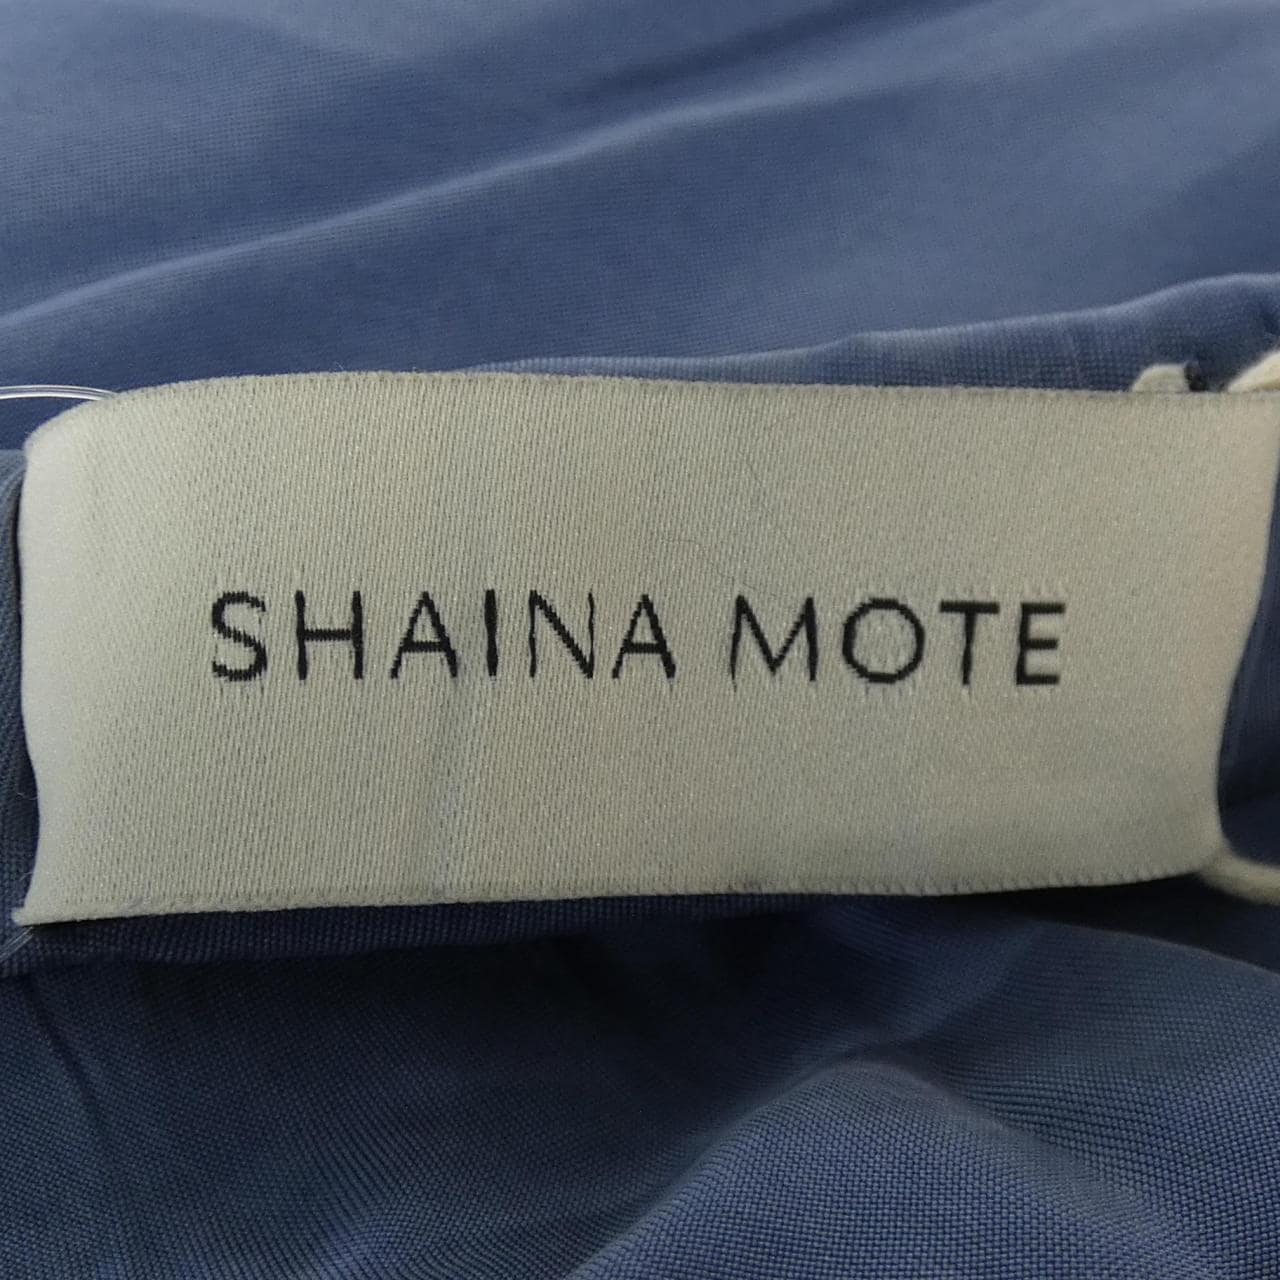 SHAINA MOTE スカート